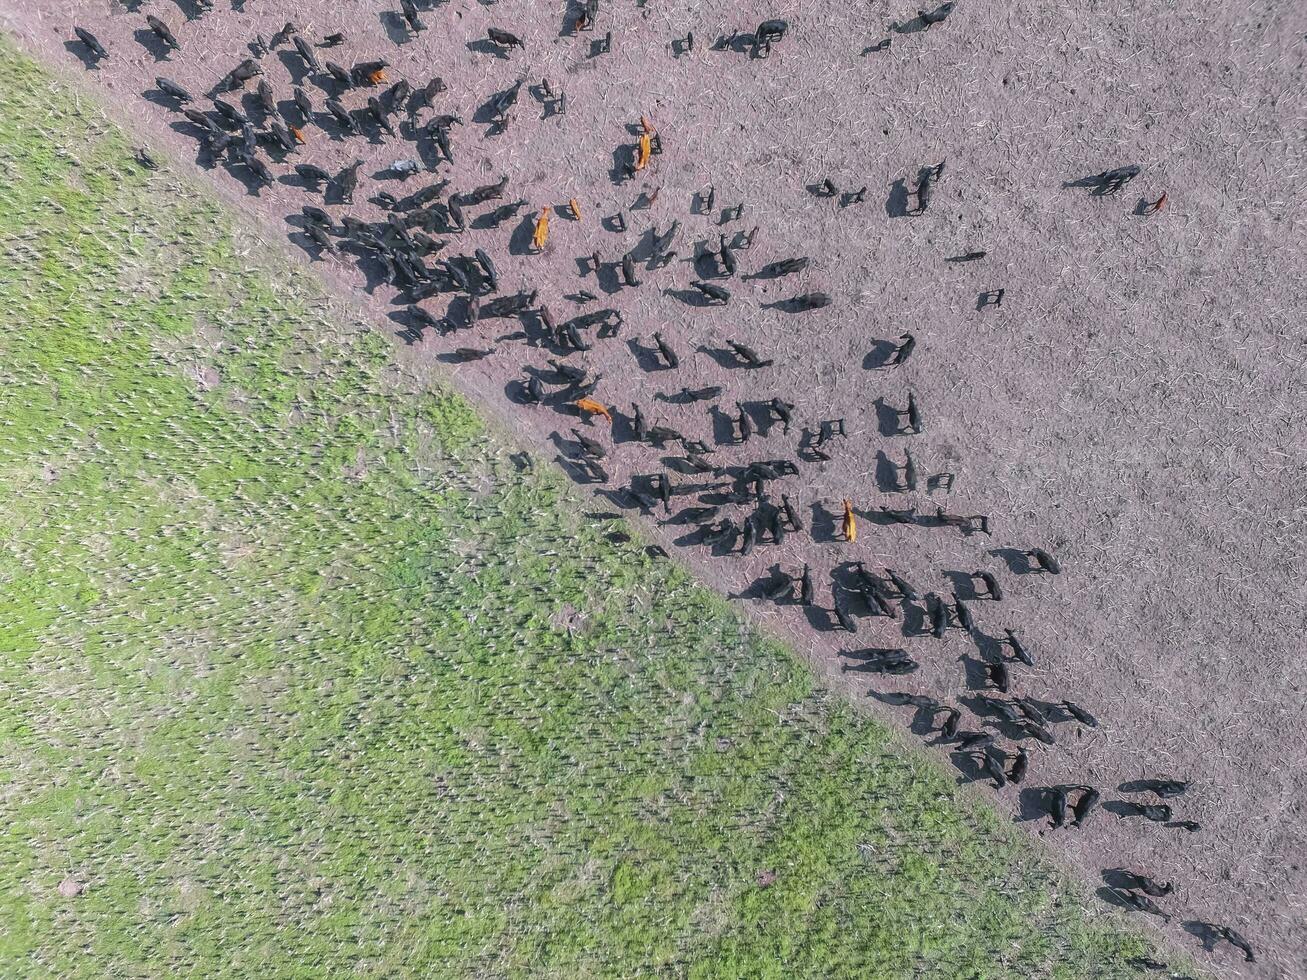 truppe di mucche nel il pampa campo, argentina foto